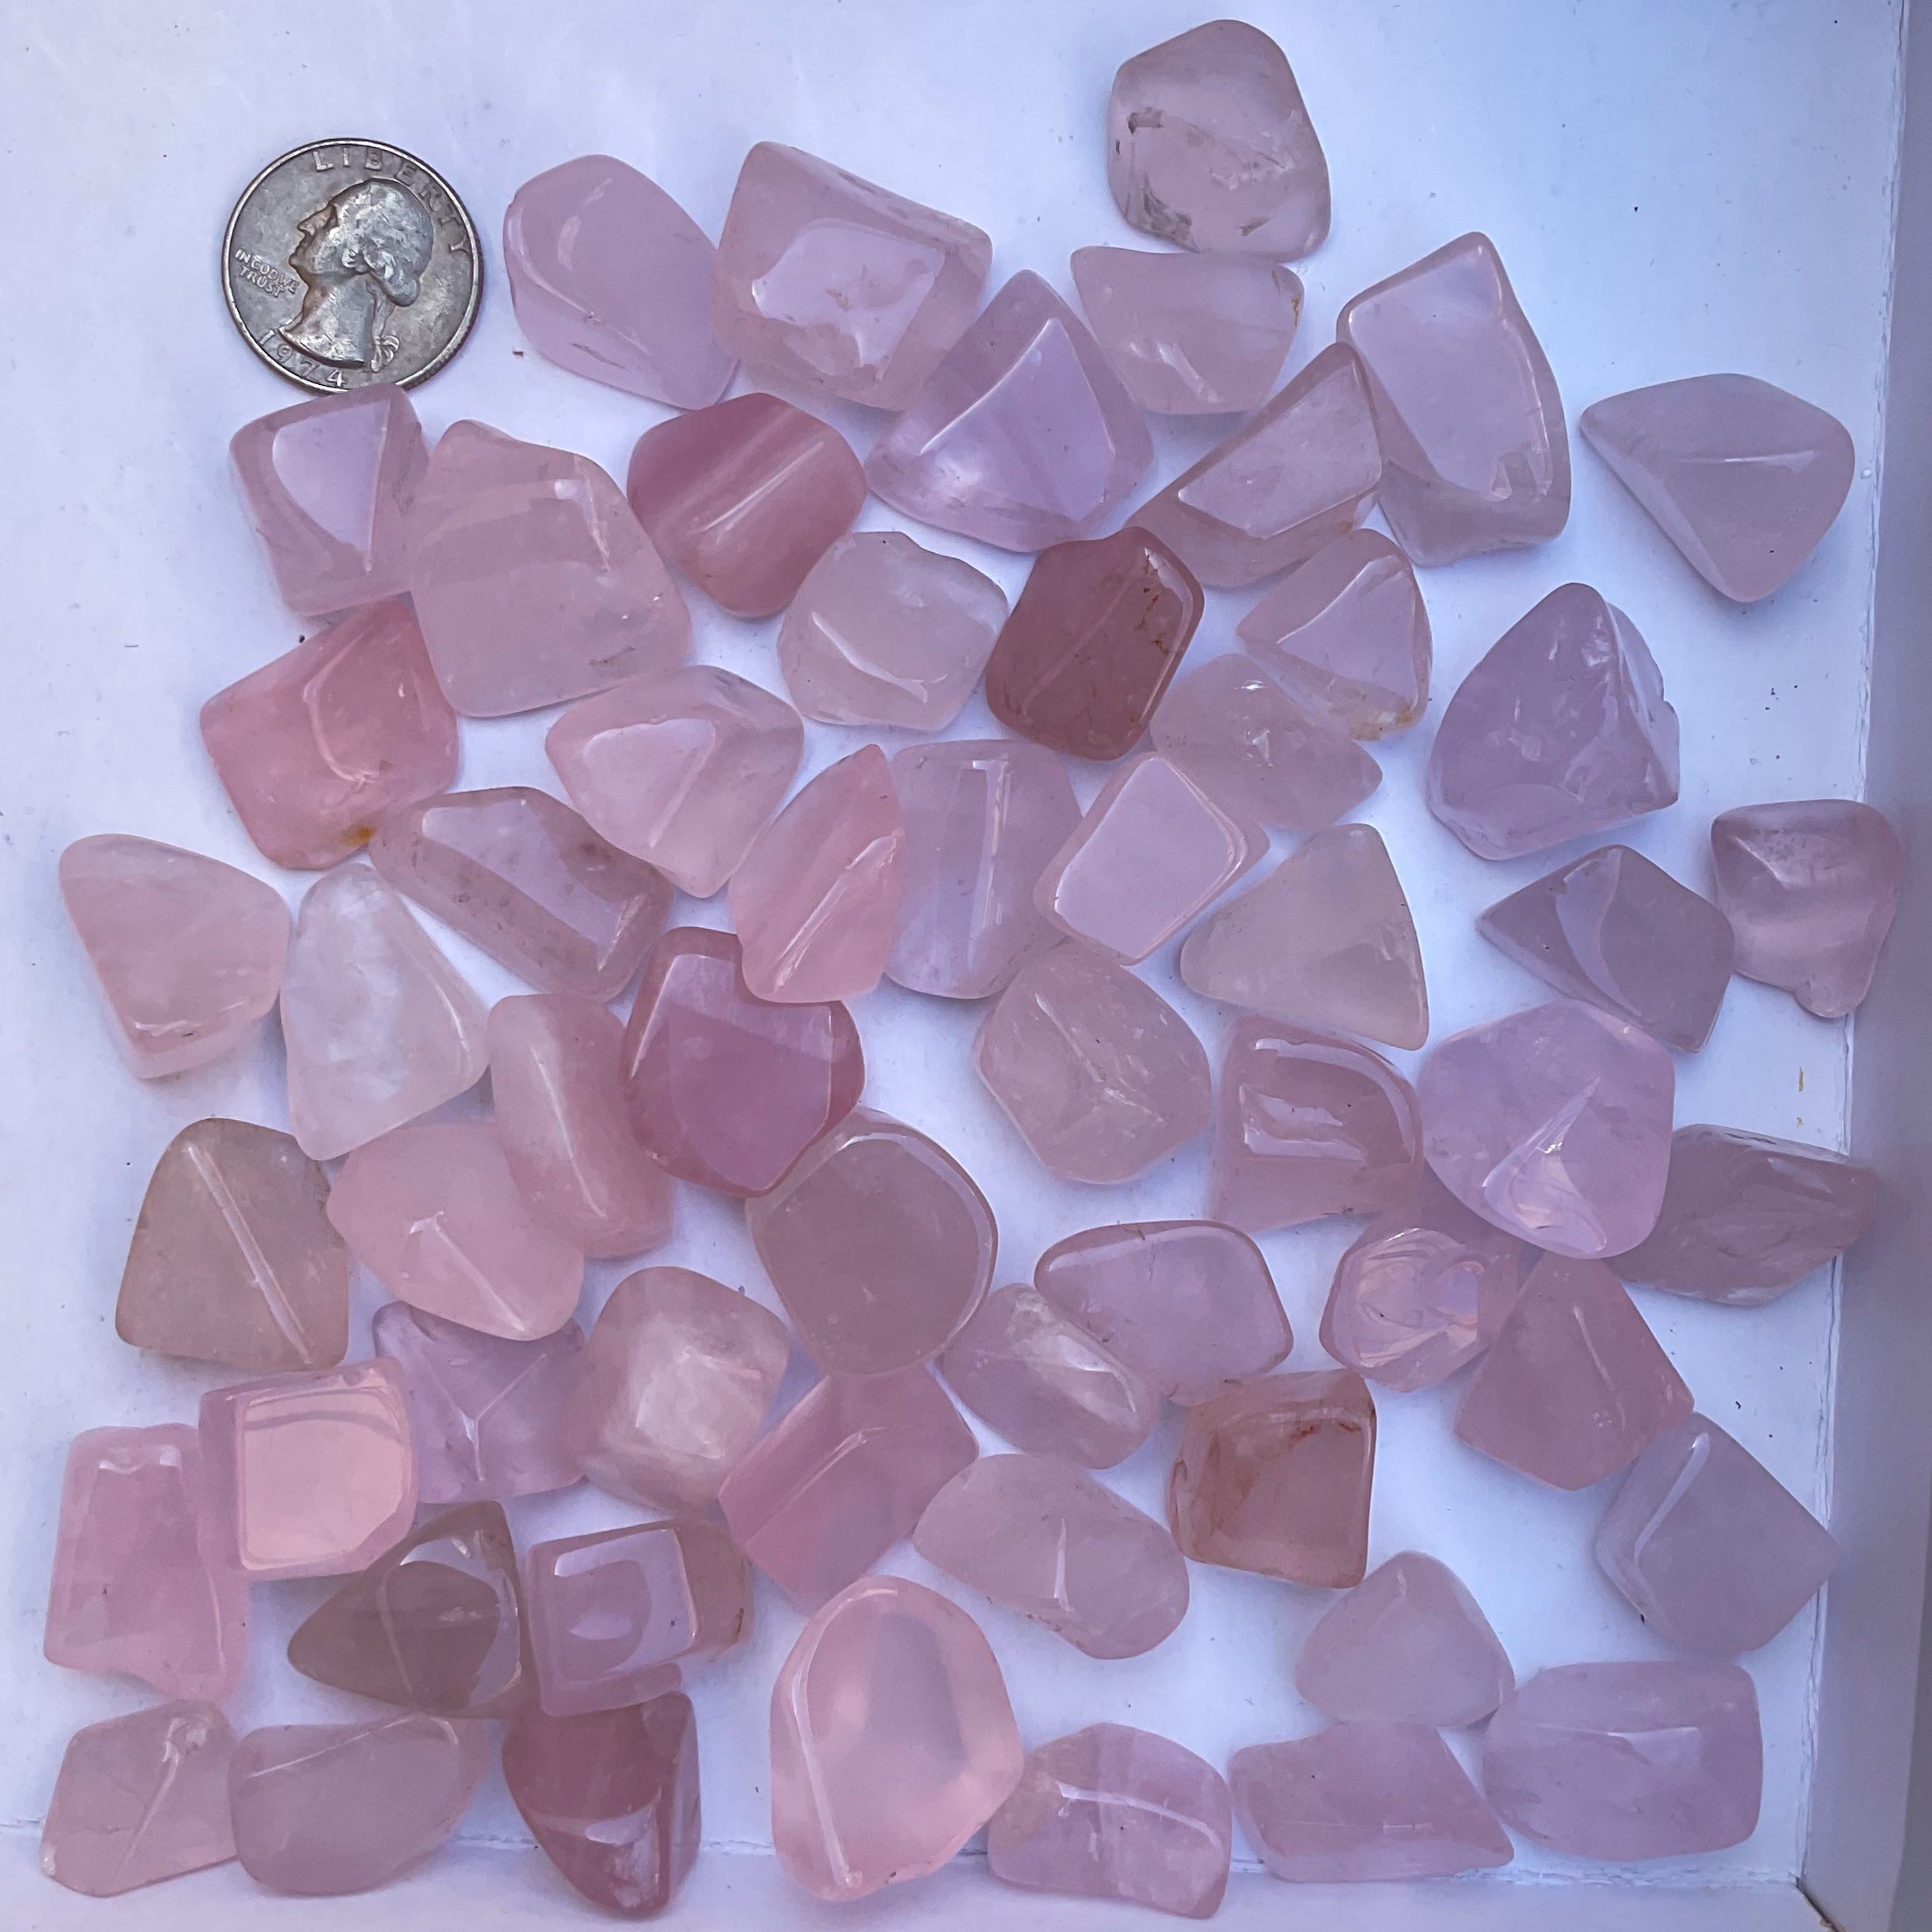 Wholesale tumbled stones bulk lot in rose quartz